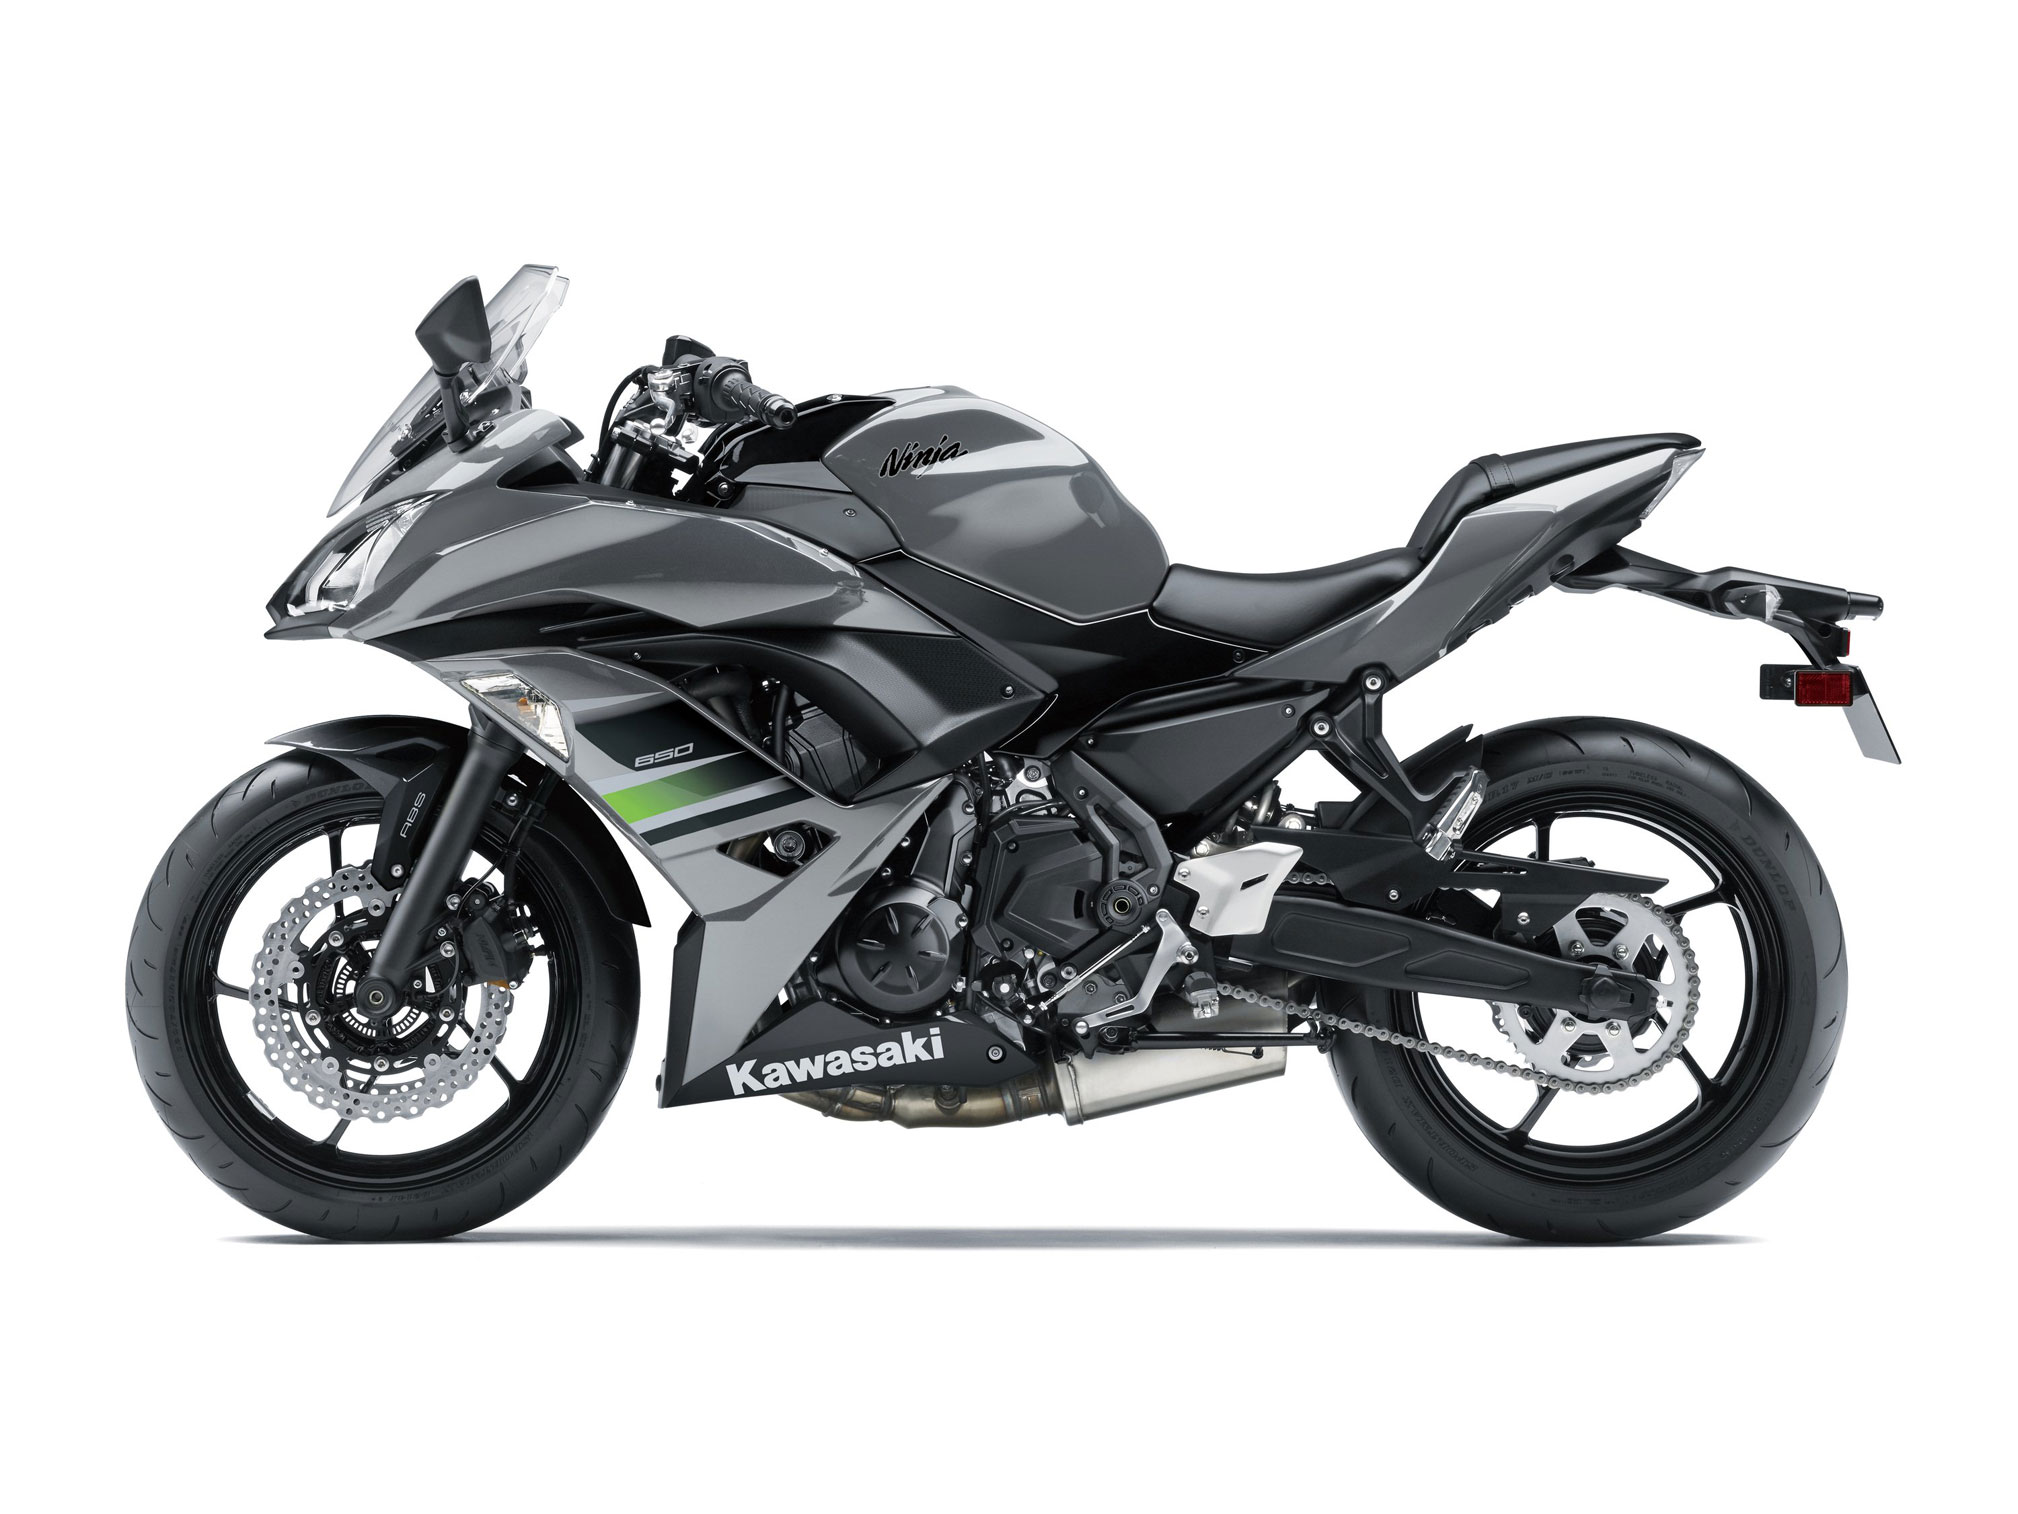 mavepine Hovedgade liberal 2018 Kawasaki Ninja 650 ABS Review • Total Motorcycle